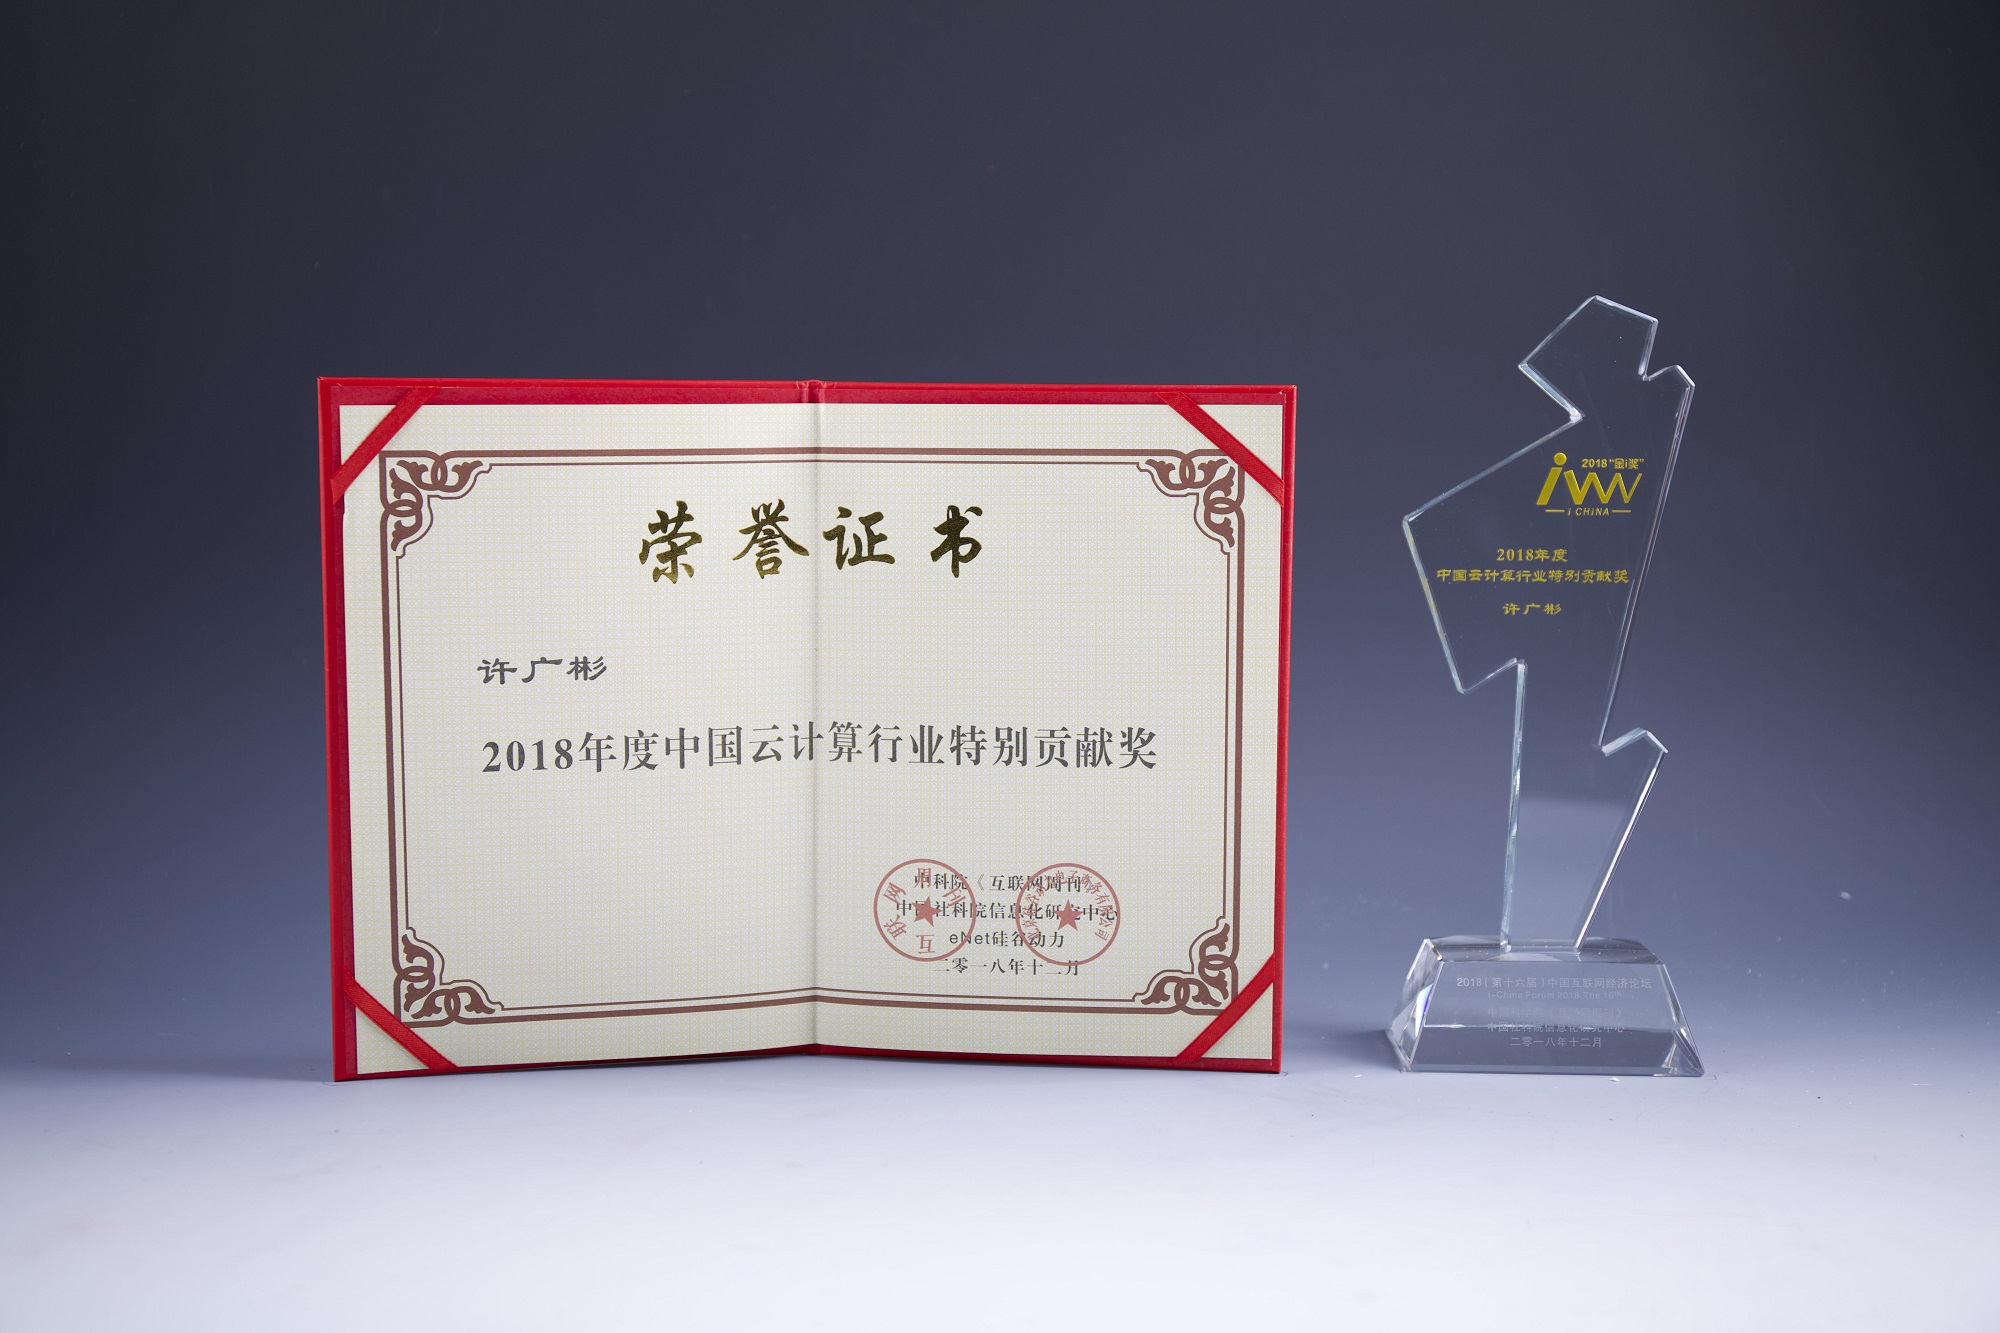 2018年度中国云计算行业特别贡献奖